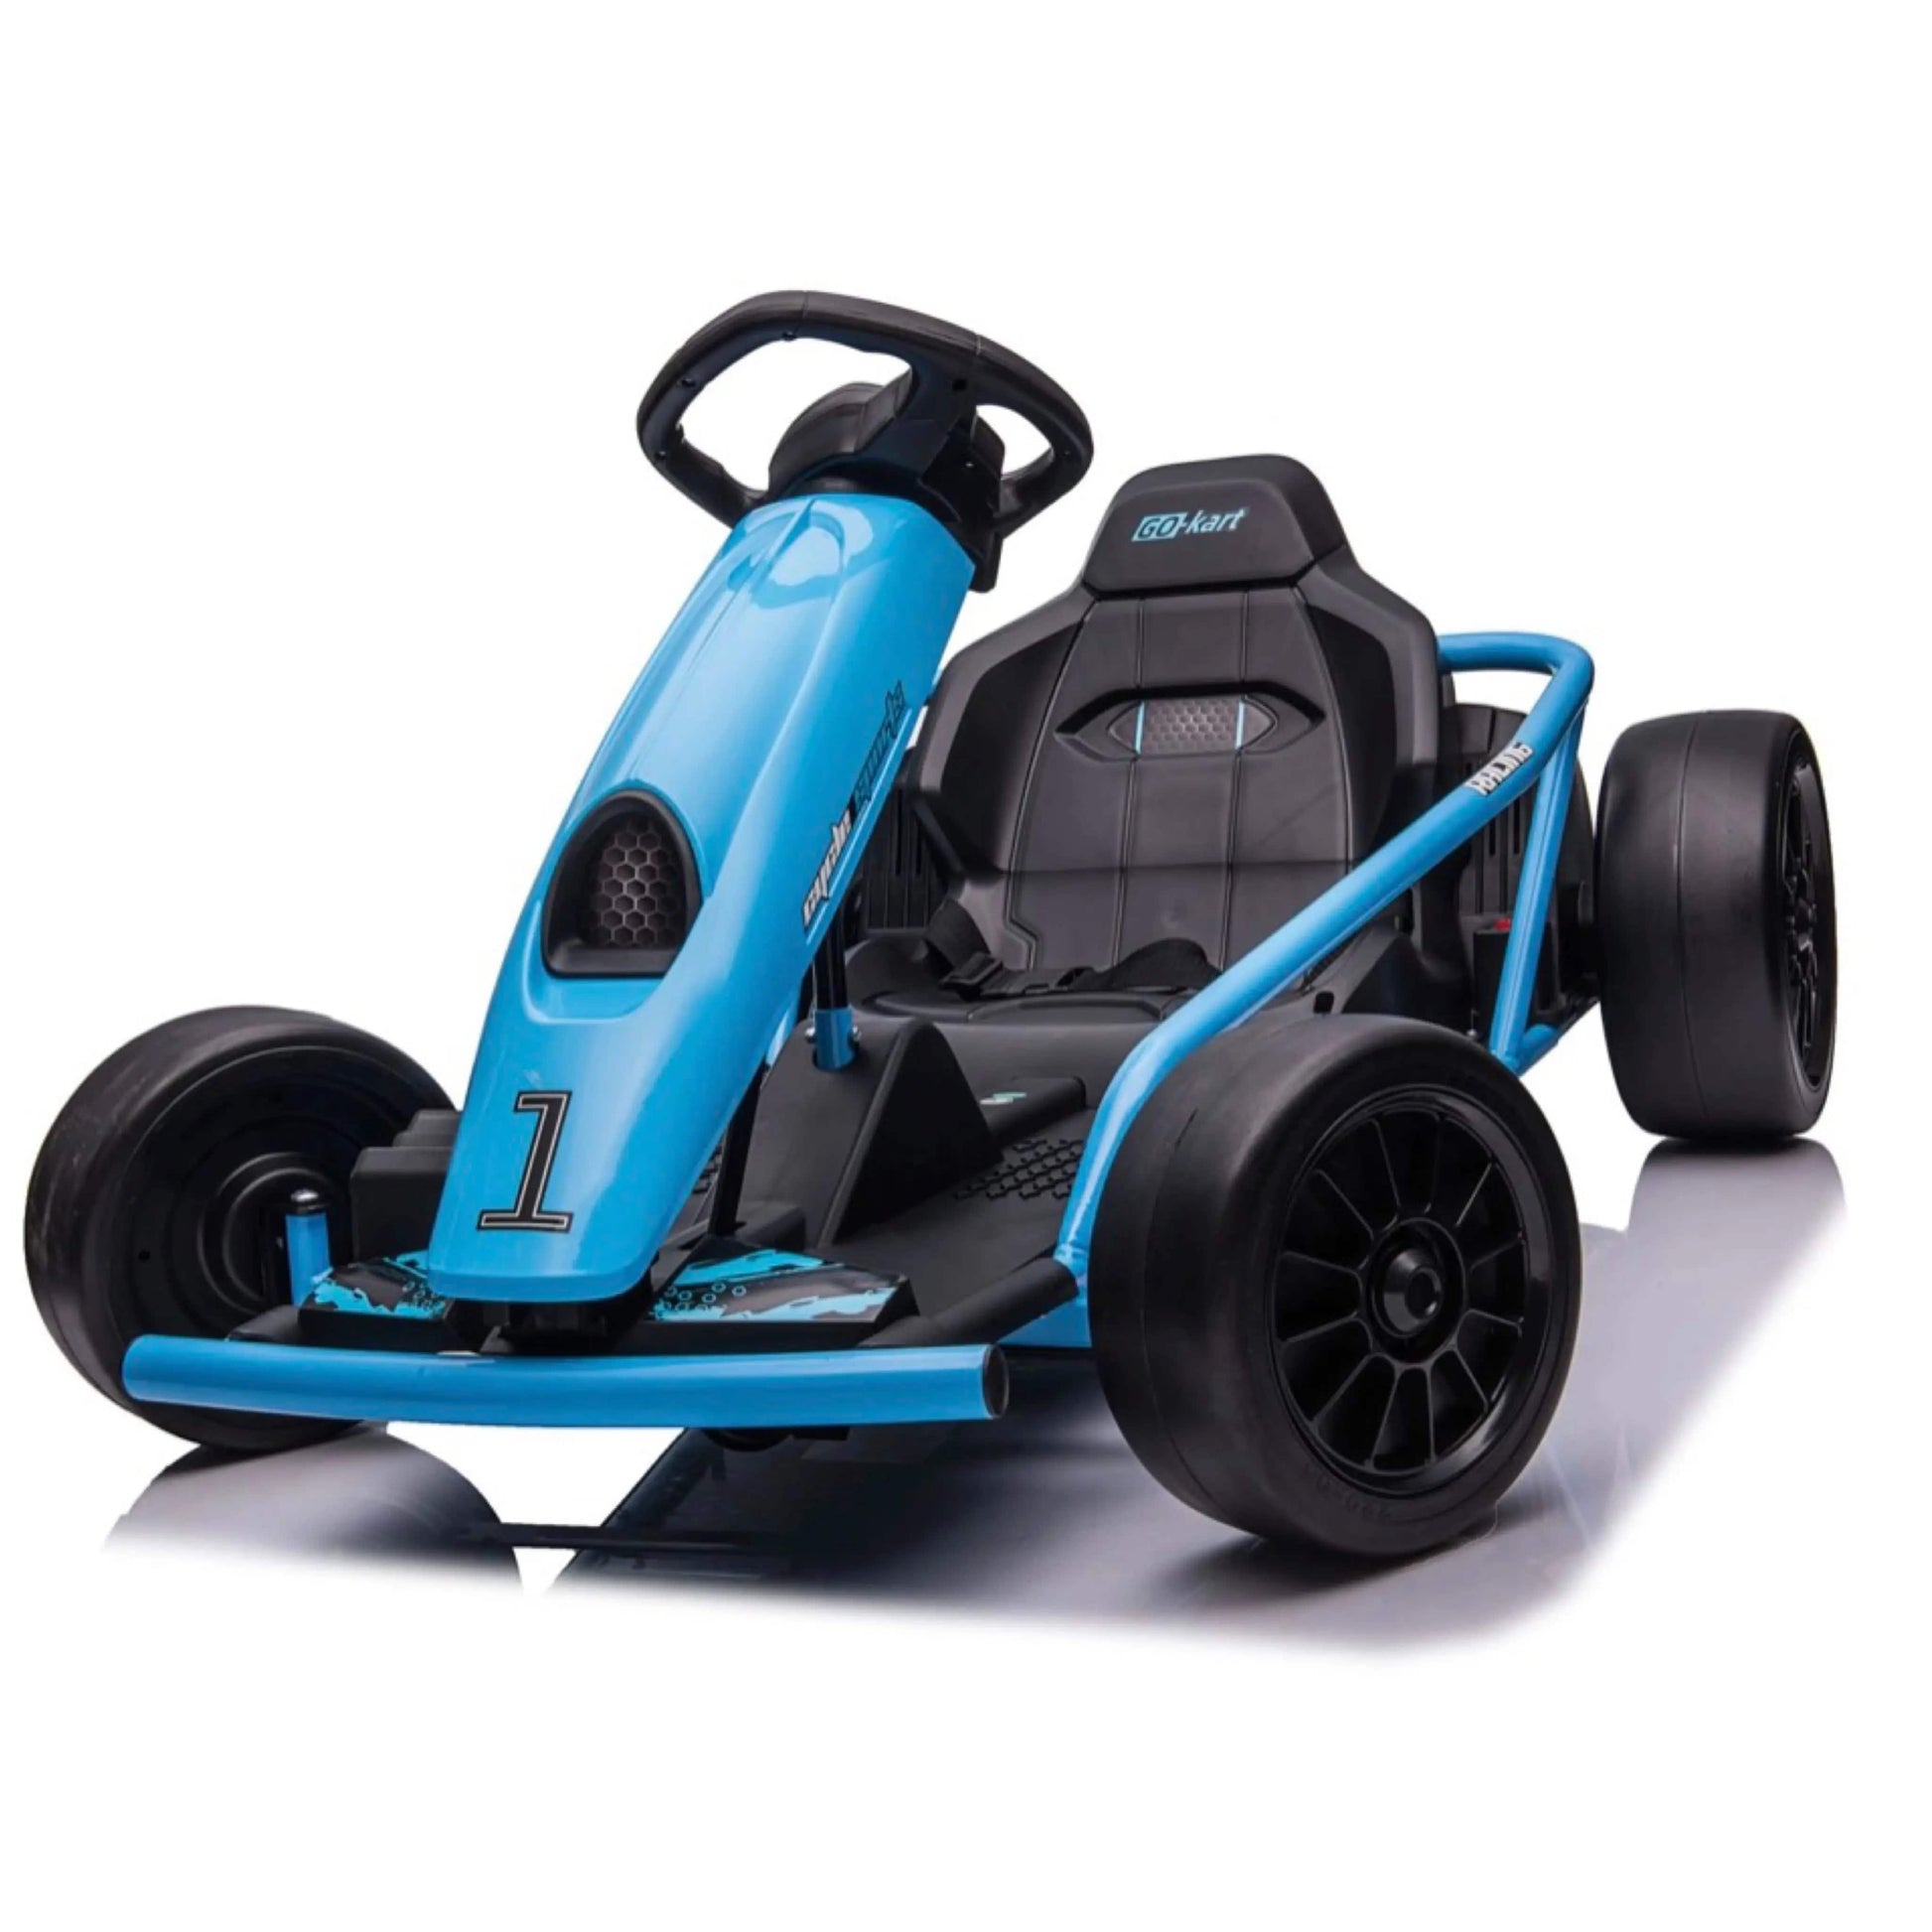 Drifter 2.0 - 24V Electric Go Kart R&G TOYS